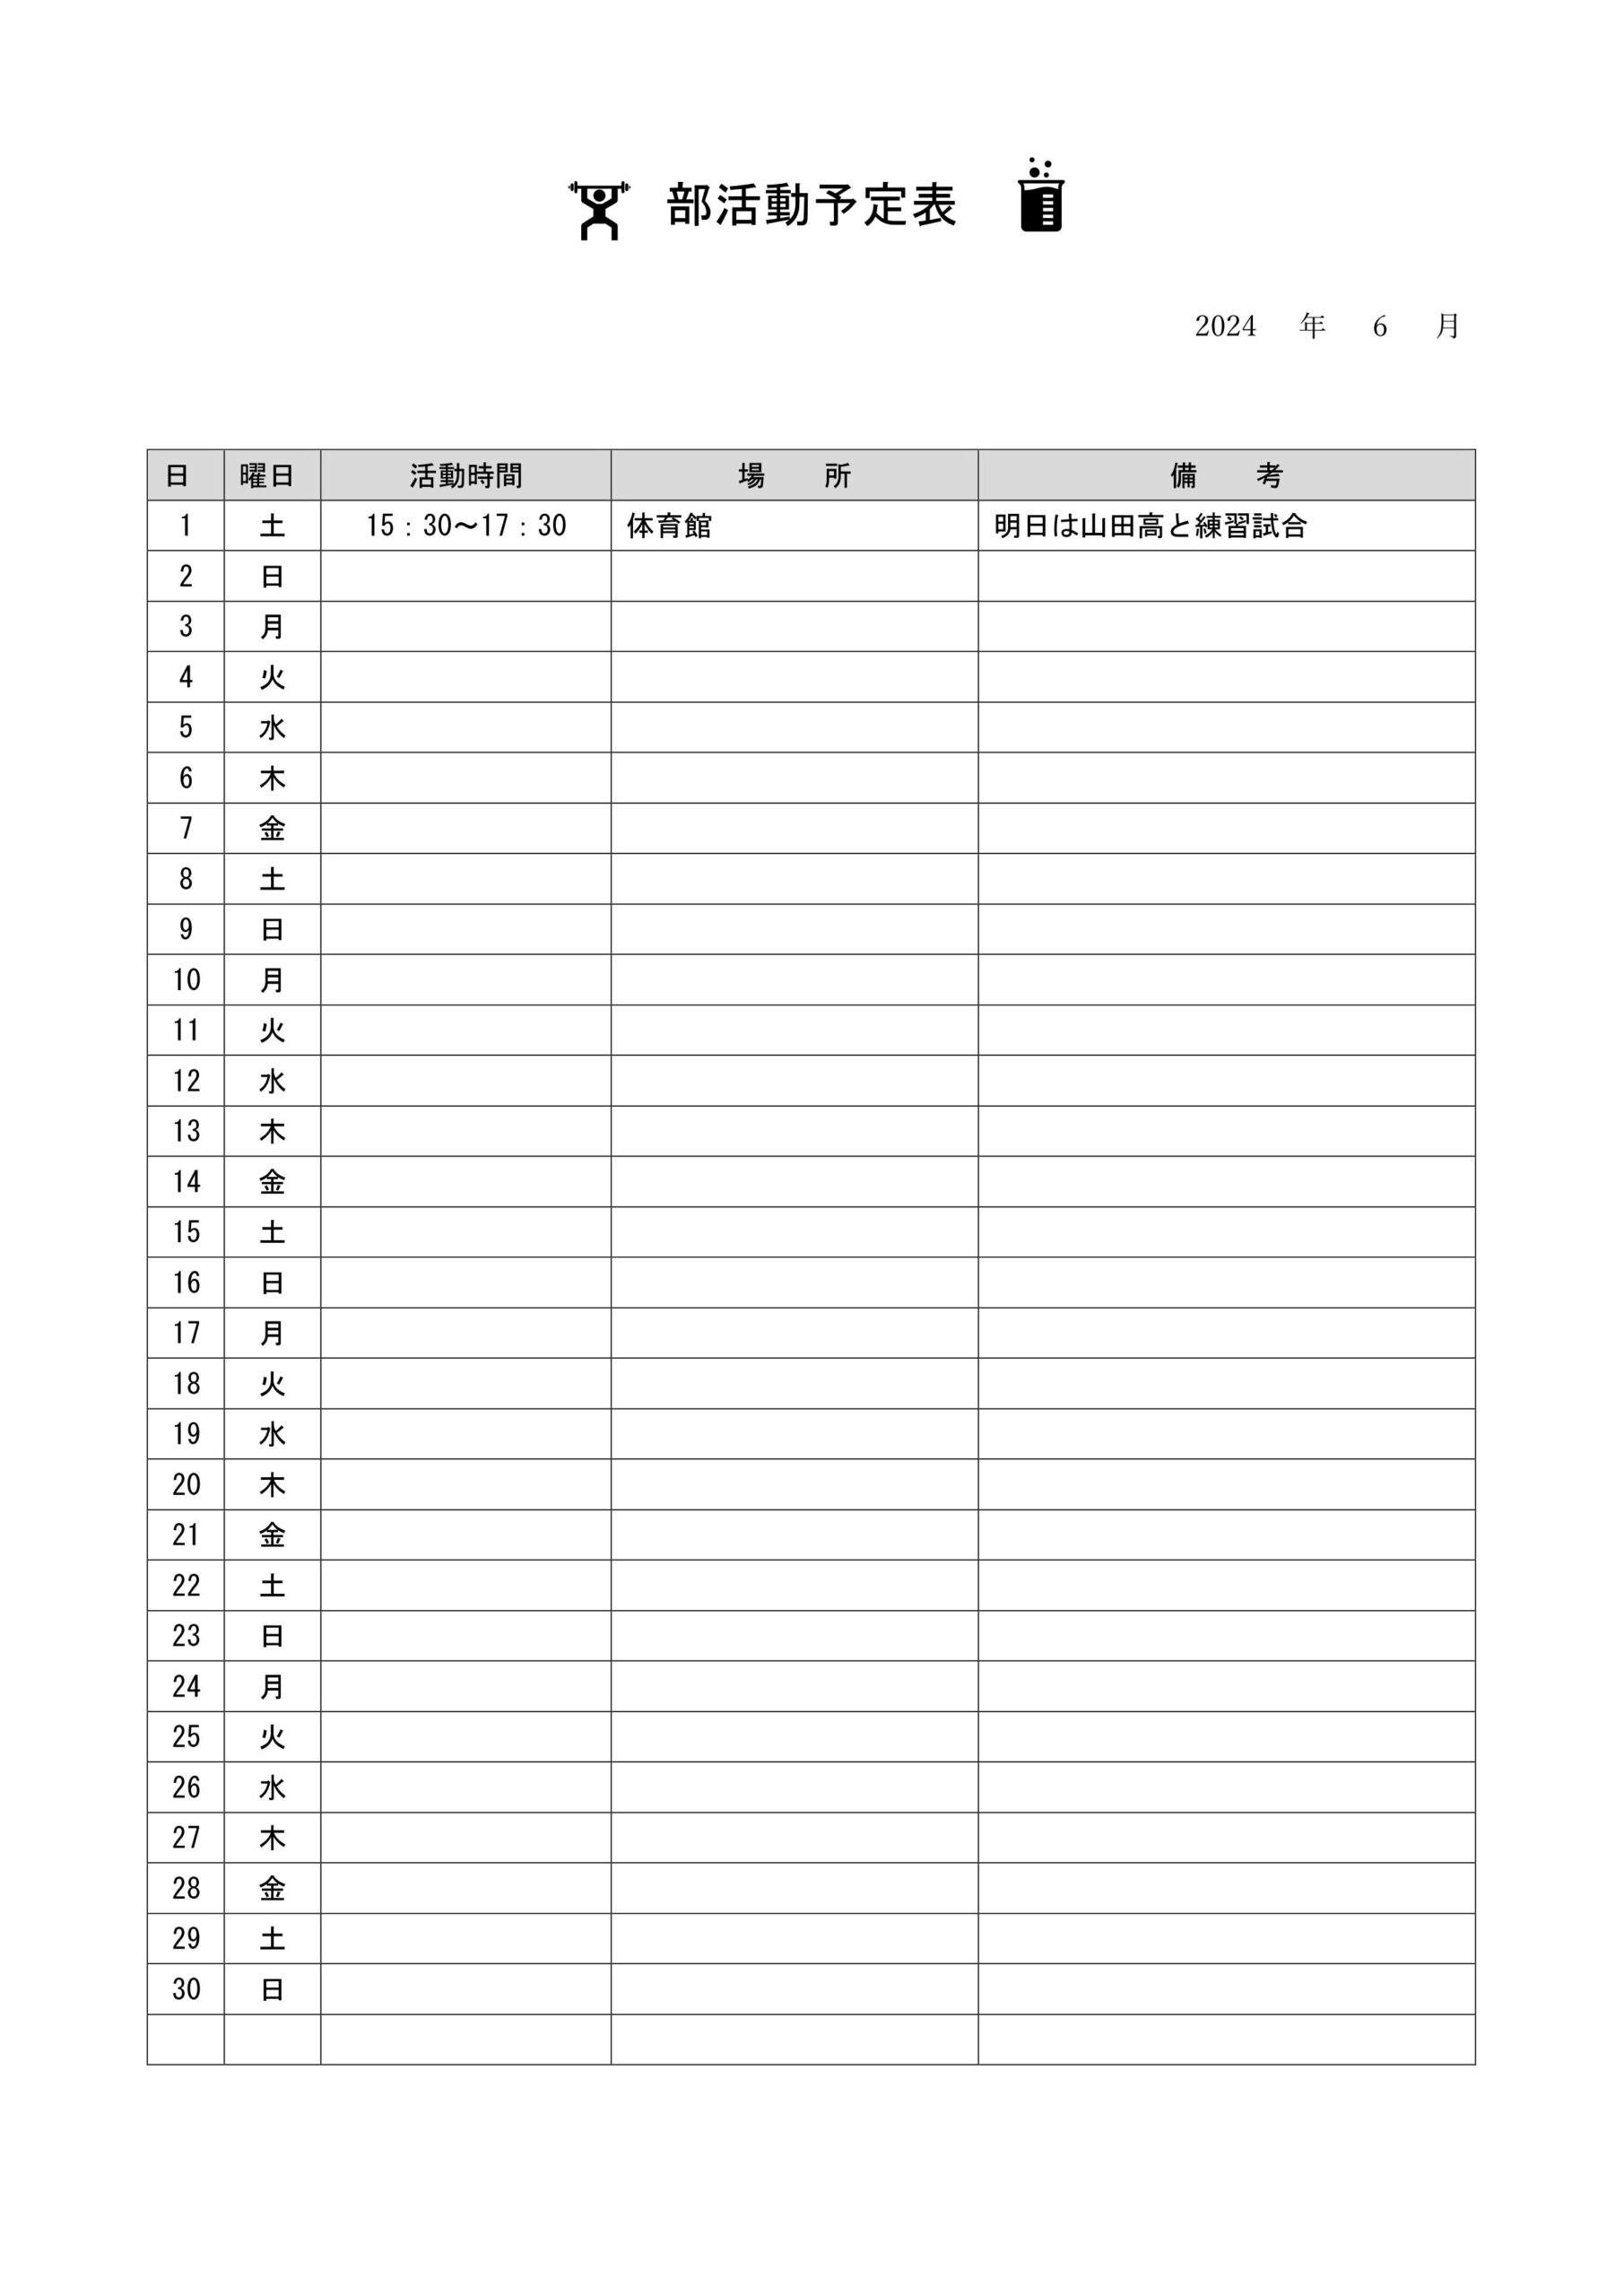 部活動の月間スケジュール表（練習や試合の予定表）学校での子供が参加する部活にて1か月分の予定を簡易的に管理や記入する為の表となり、配布や張り出す事を想定している